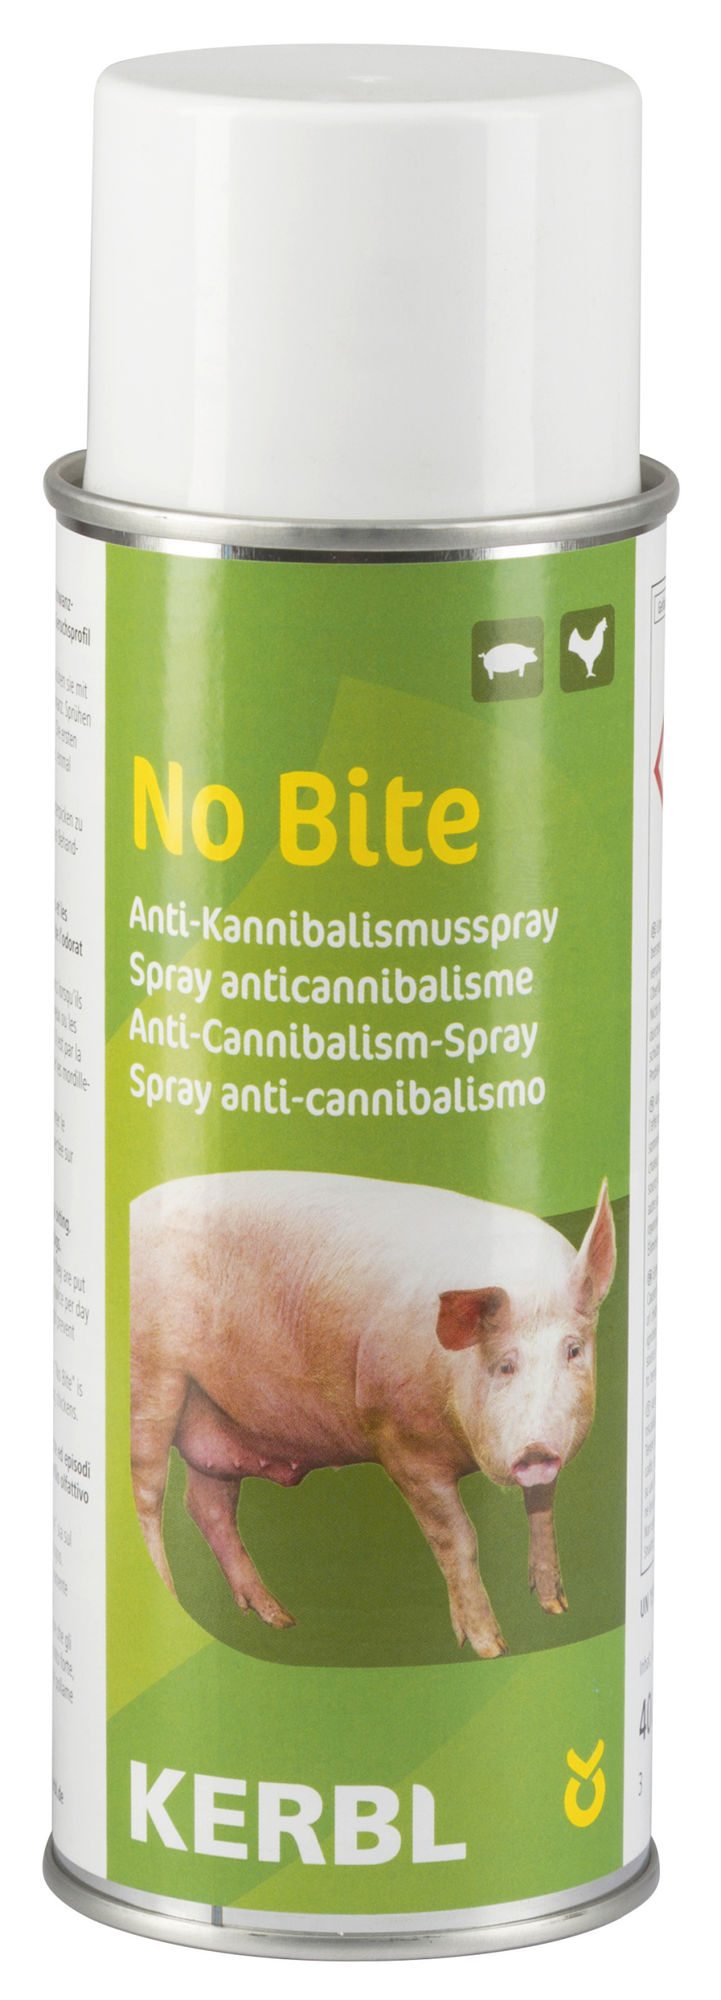 NoBite Anti-Kannibalspray, 400ml (nur für Export)